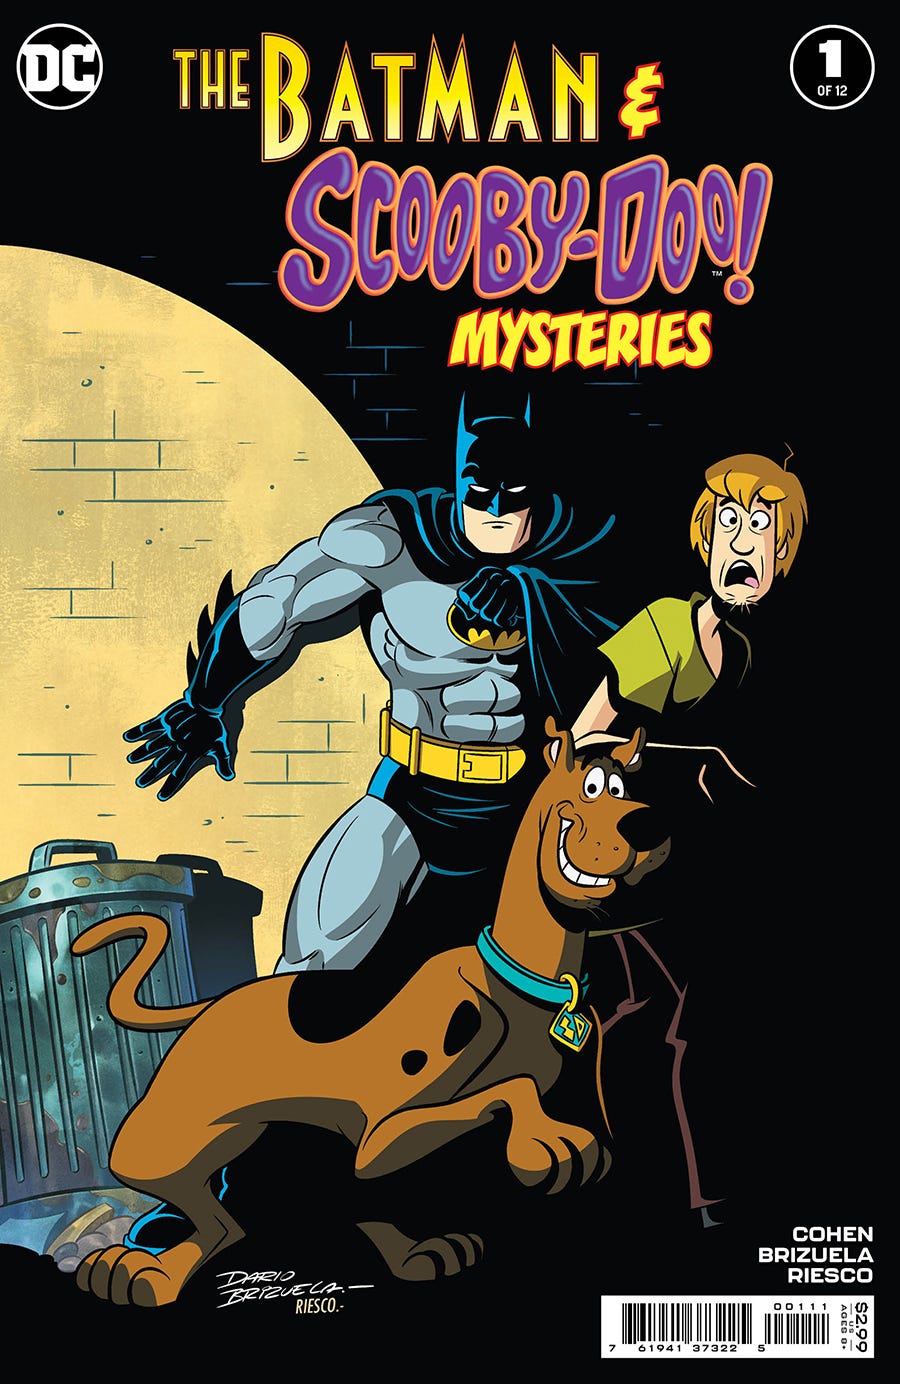 Batman & Scooby-Doo Mysteries #1 (of 12)